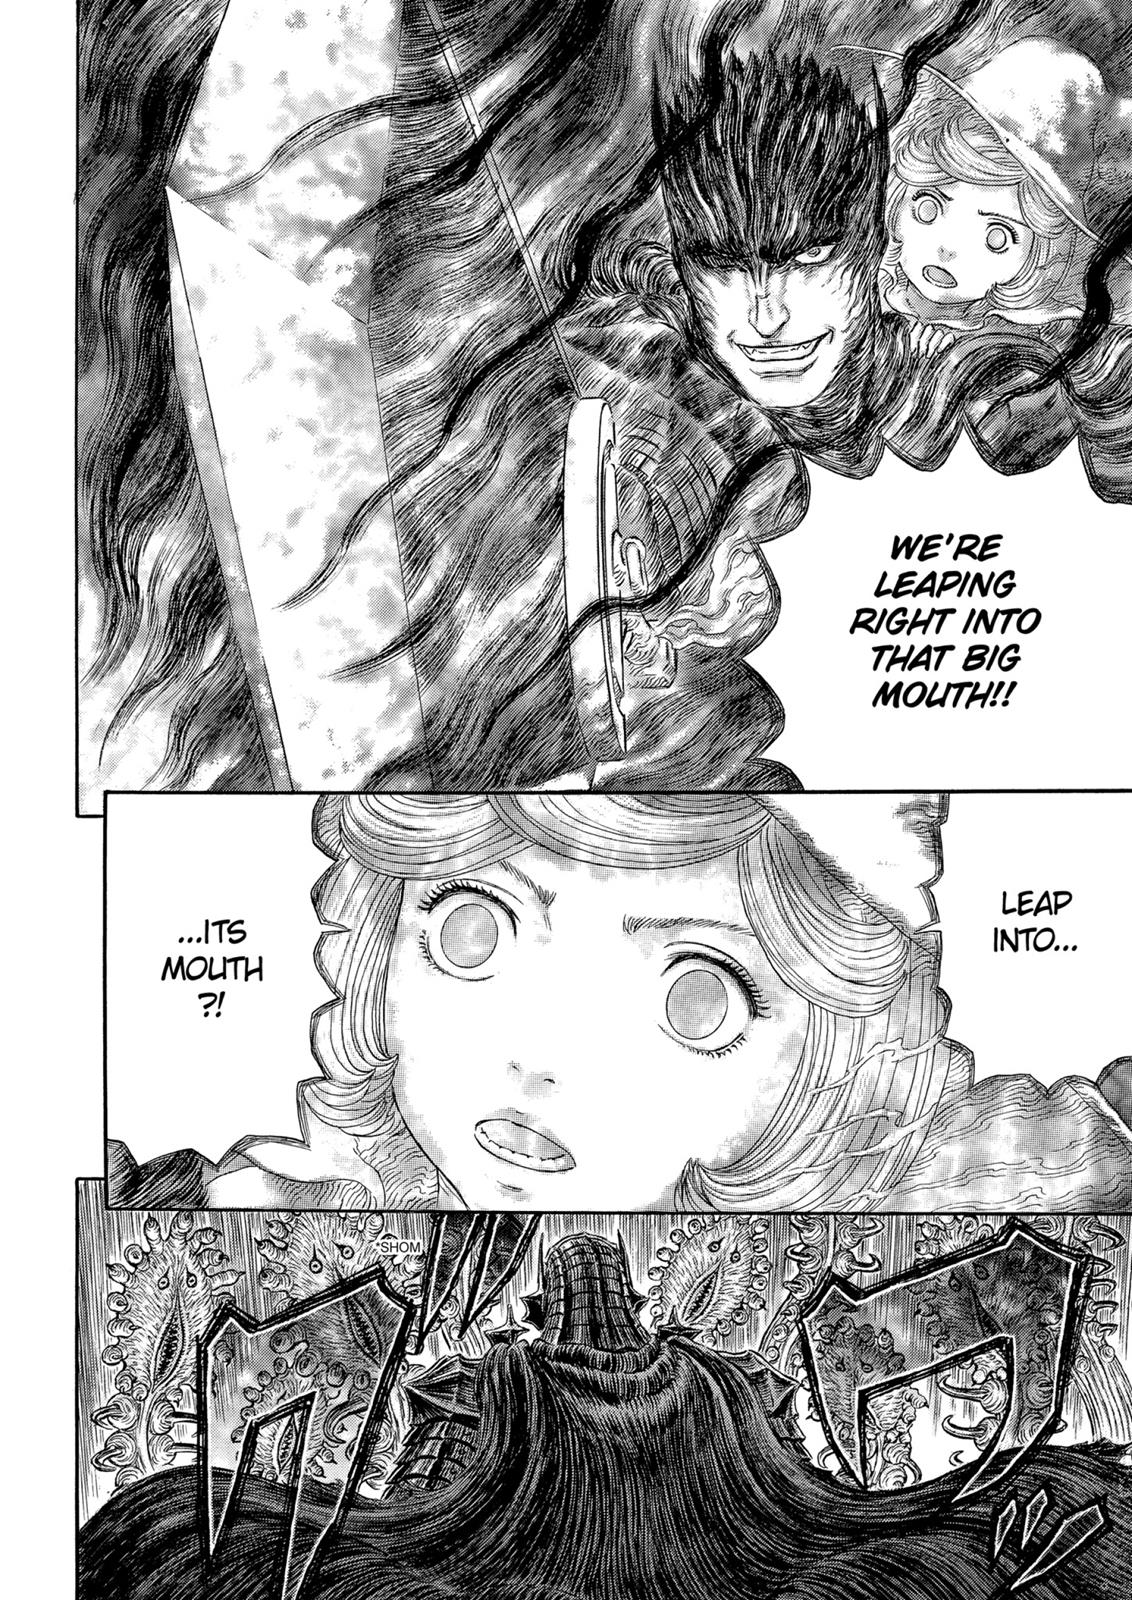 Berserk Manga Chapter 319 image 13